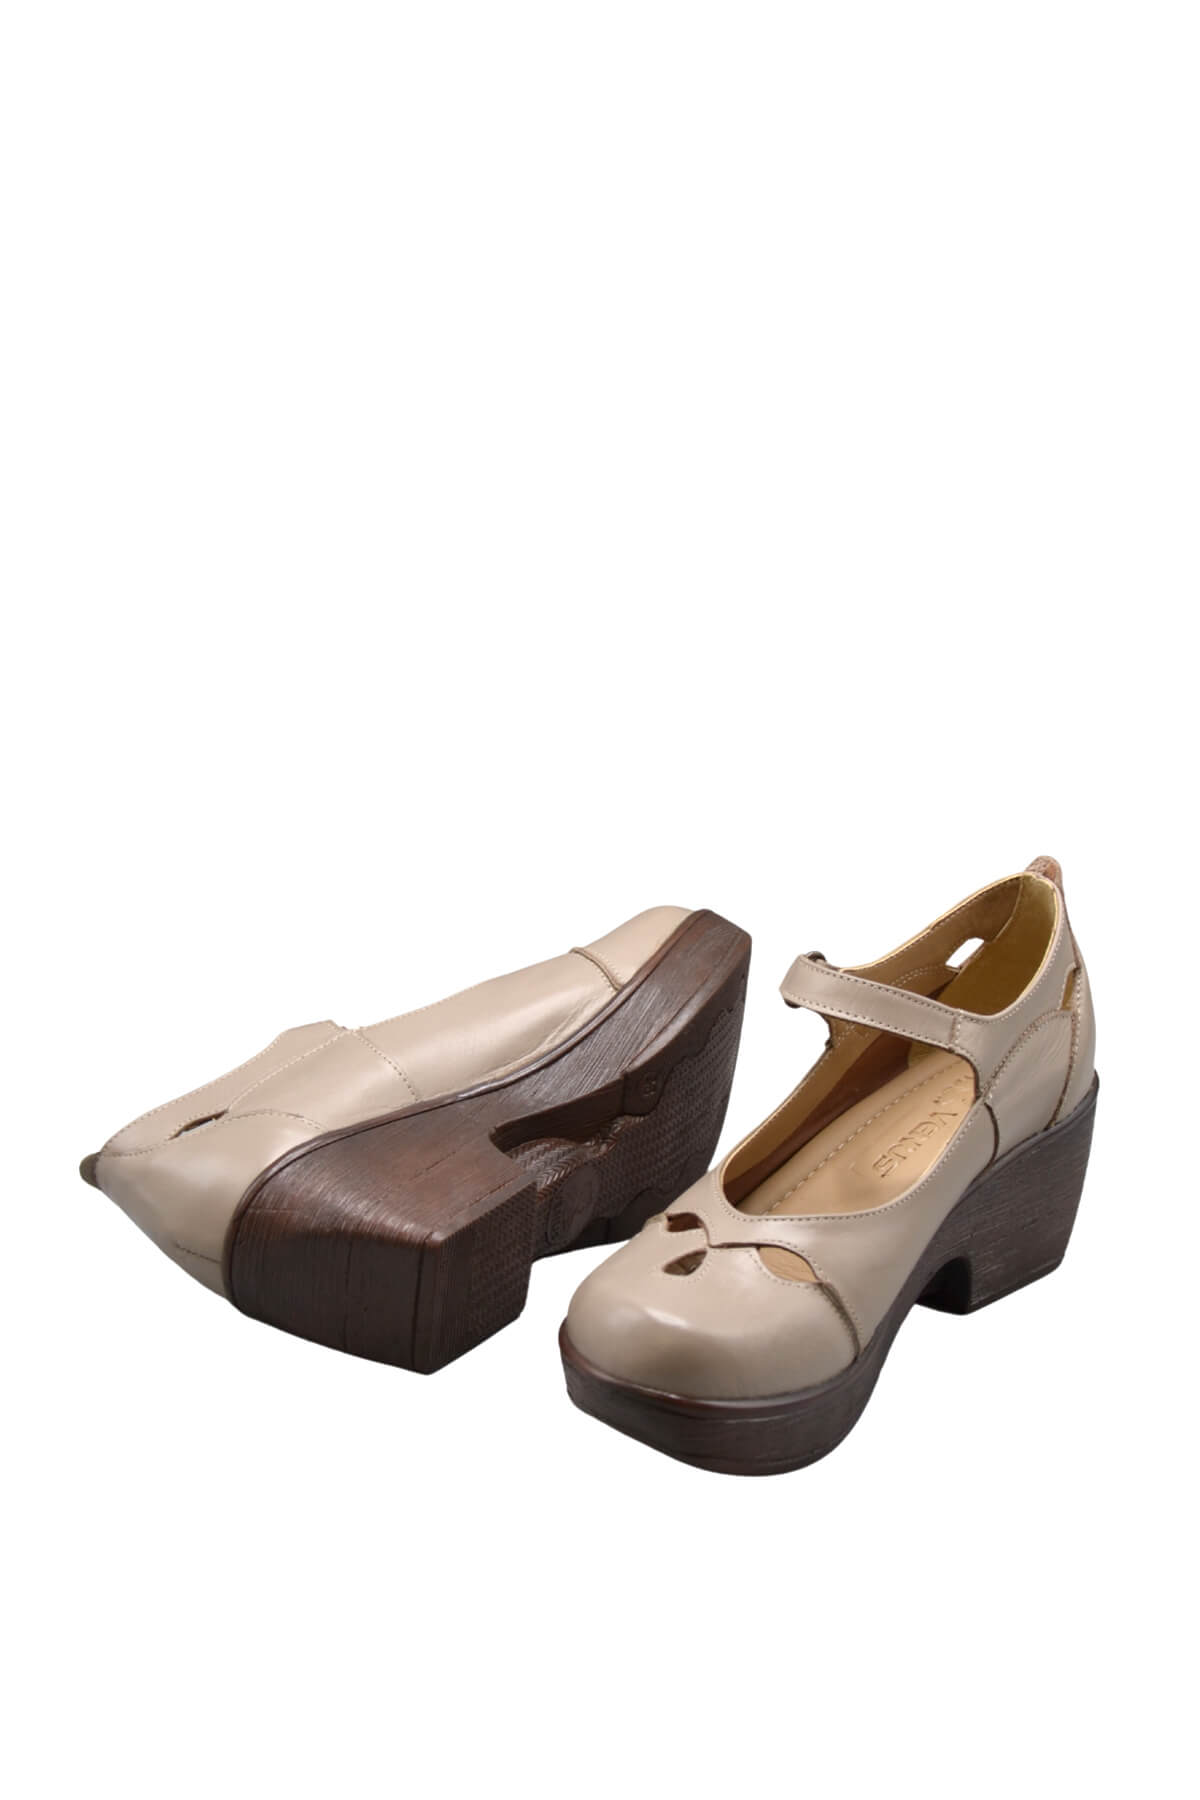 Kadın Apartman Topuk Deri Ayakkabı Taş 1912501 - Thumbnail